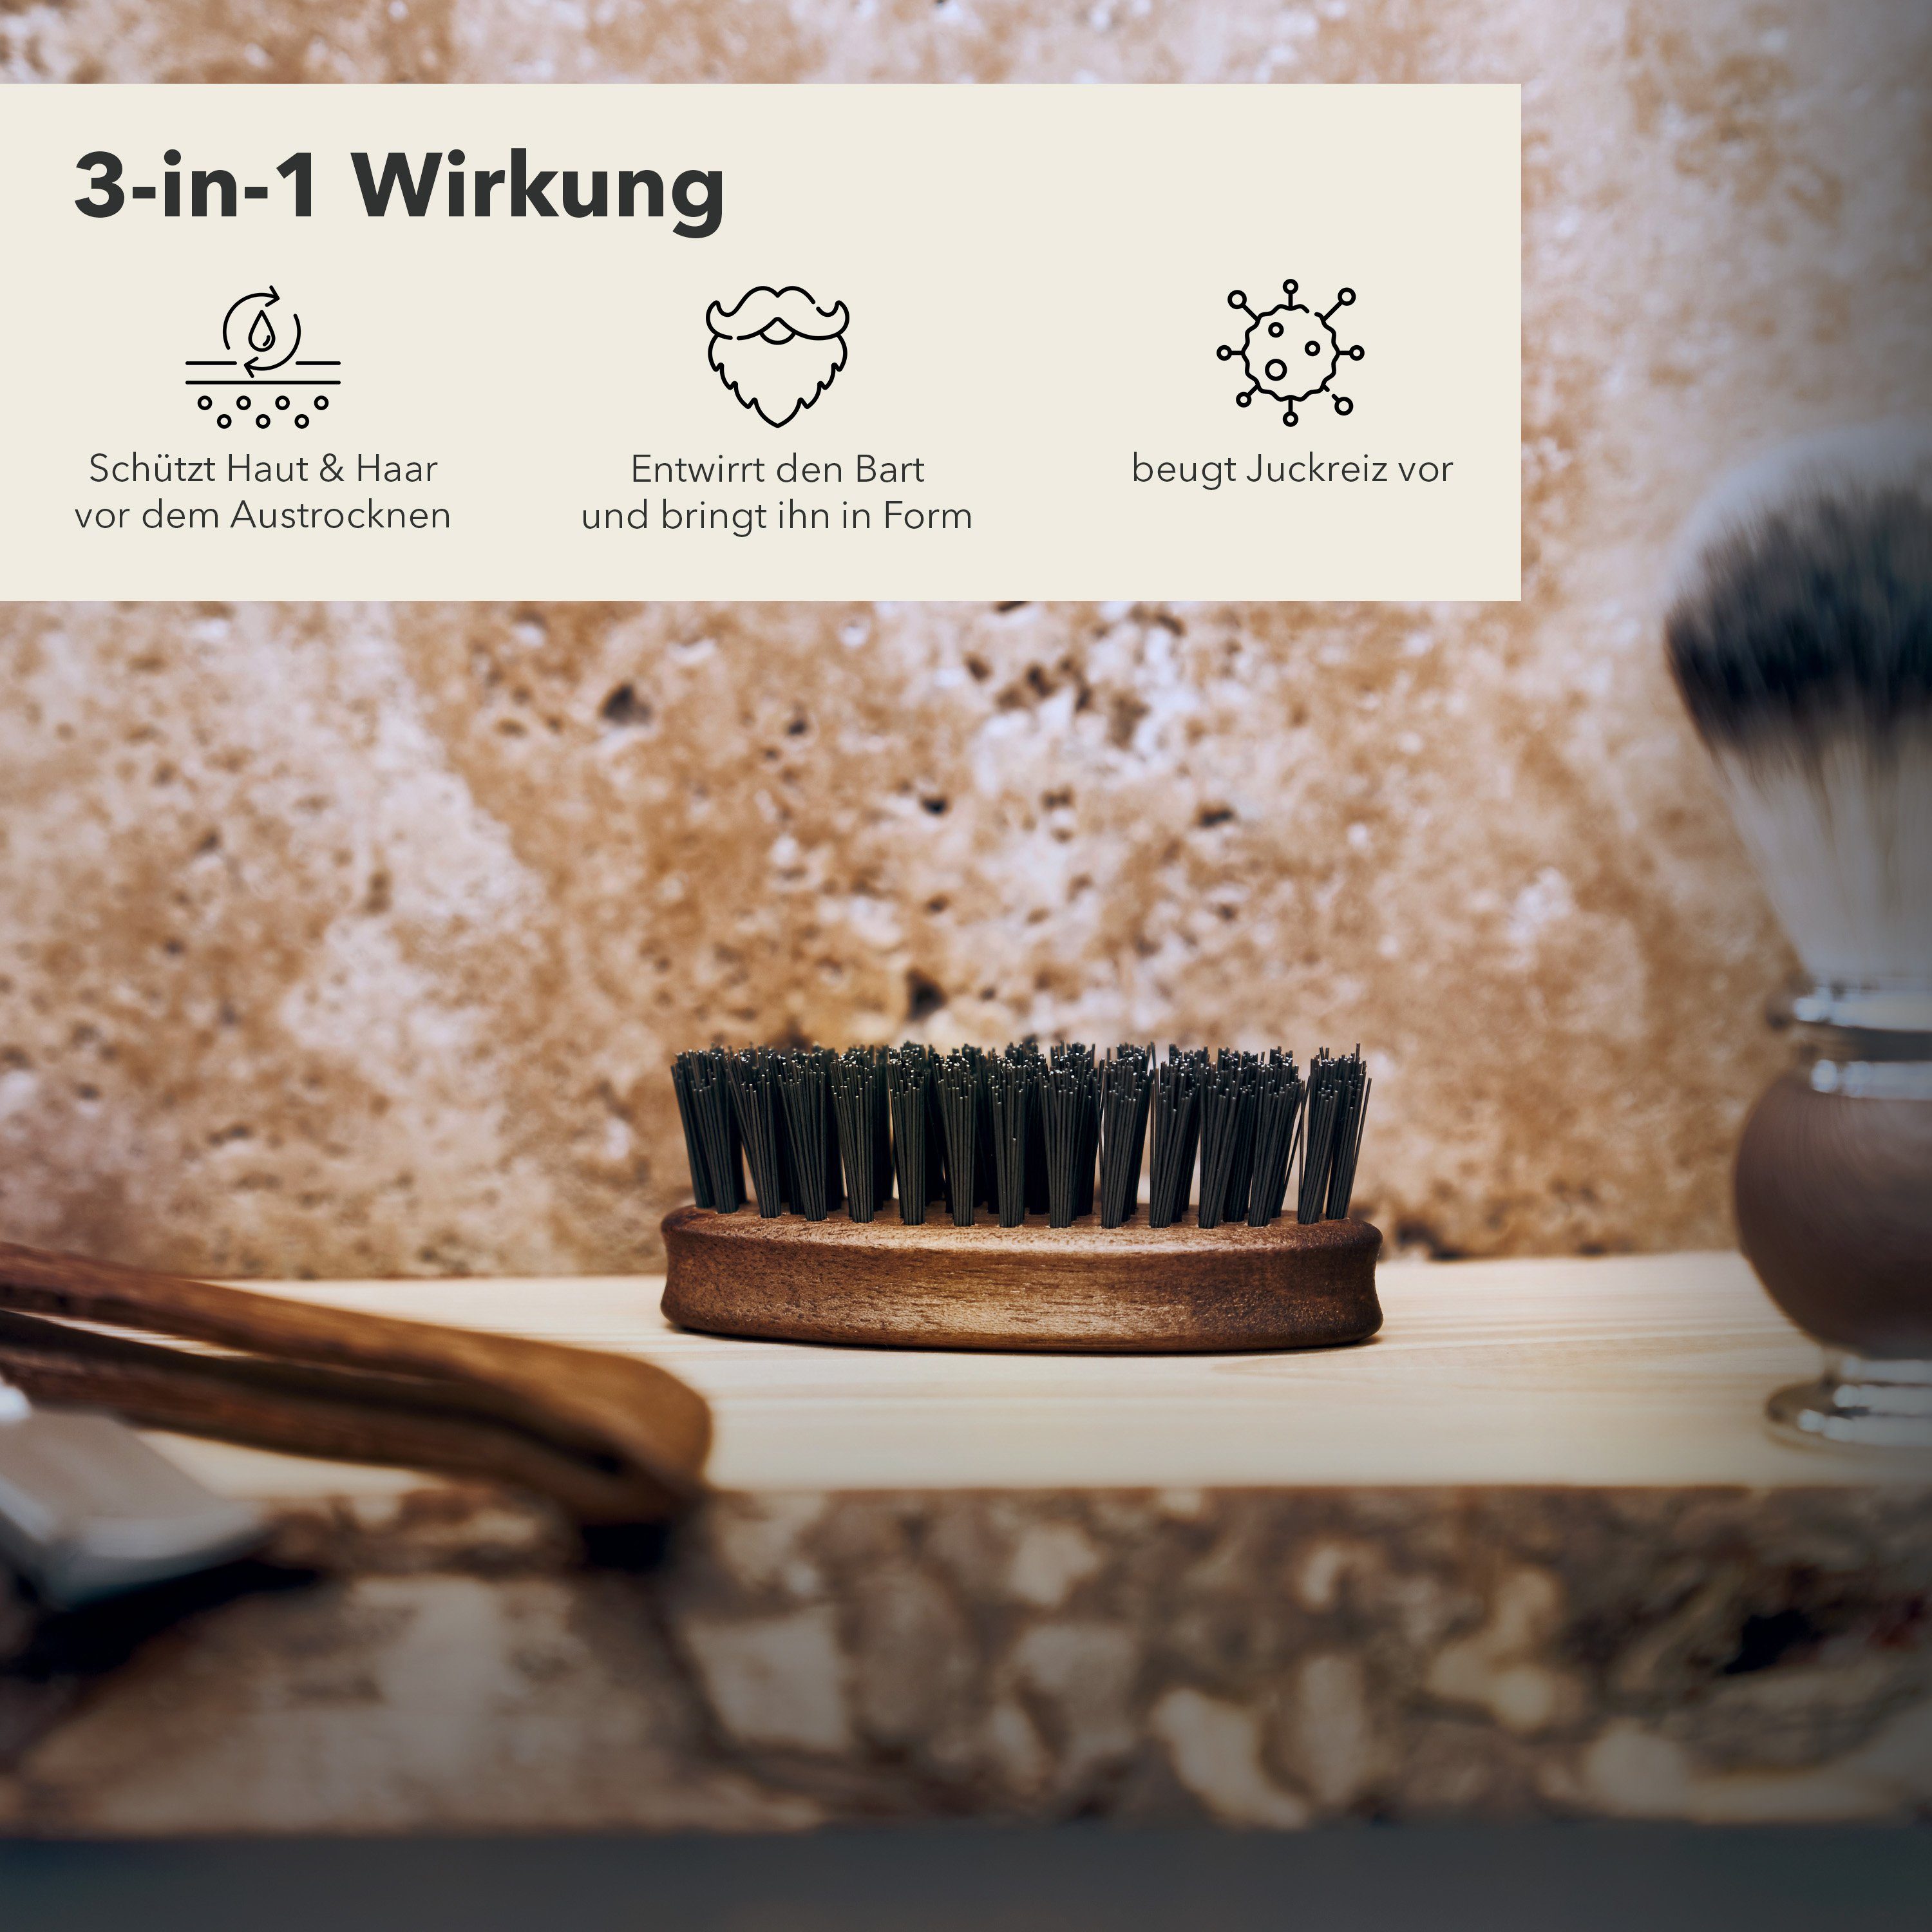 Germany Form - Bart und Störtebekker bringt den Made in ihn Entwirrt Bartbürste in